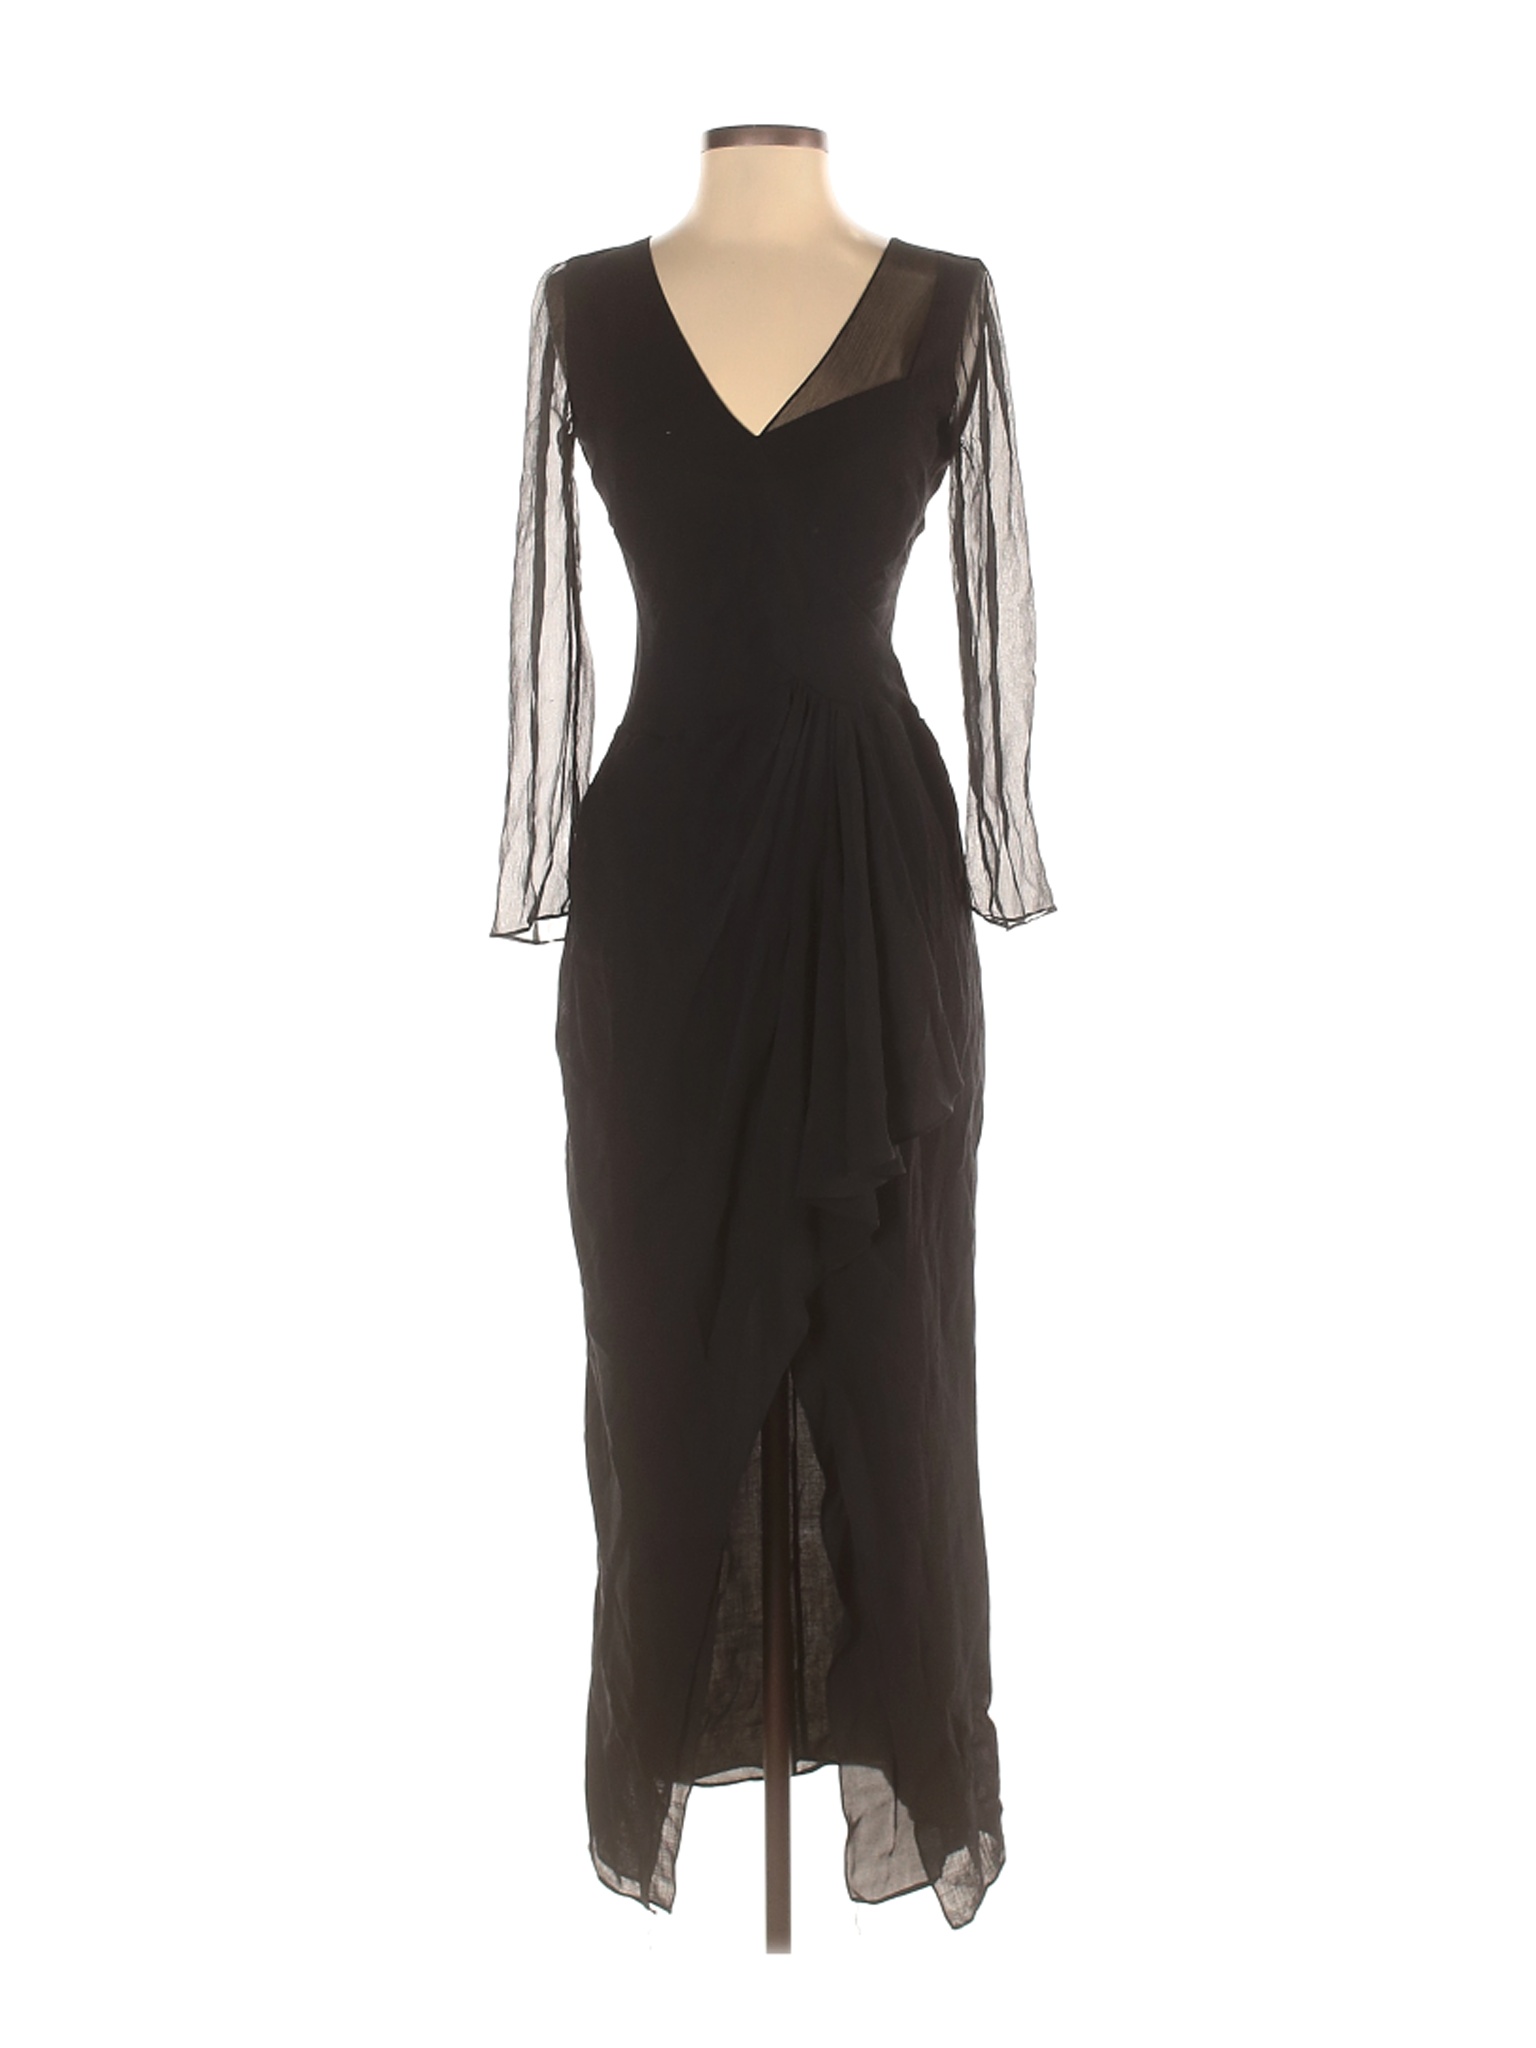 J. Mendel Solid Black Cocktail Dress Size 4 - 95% off | thredUP